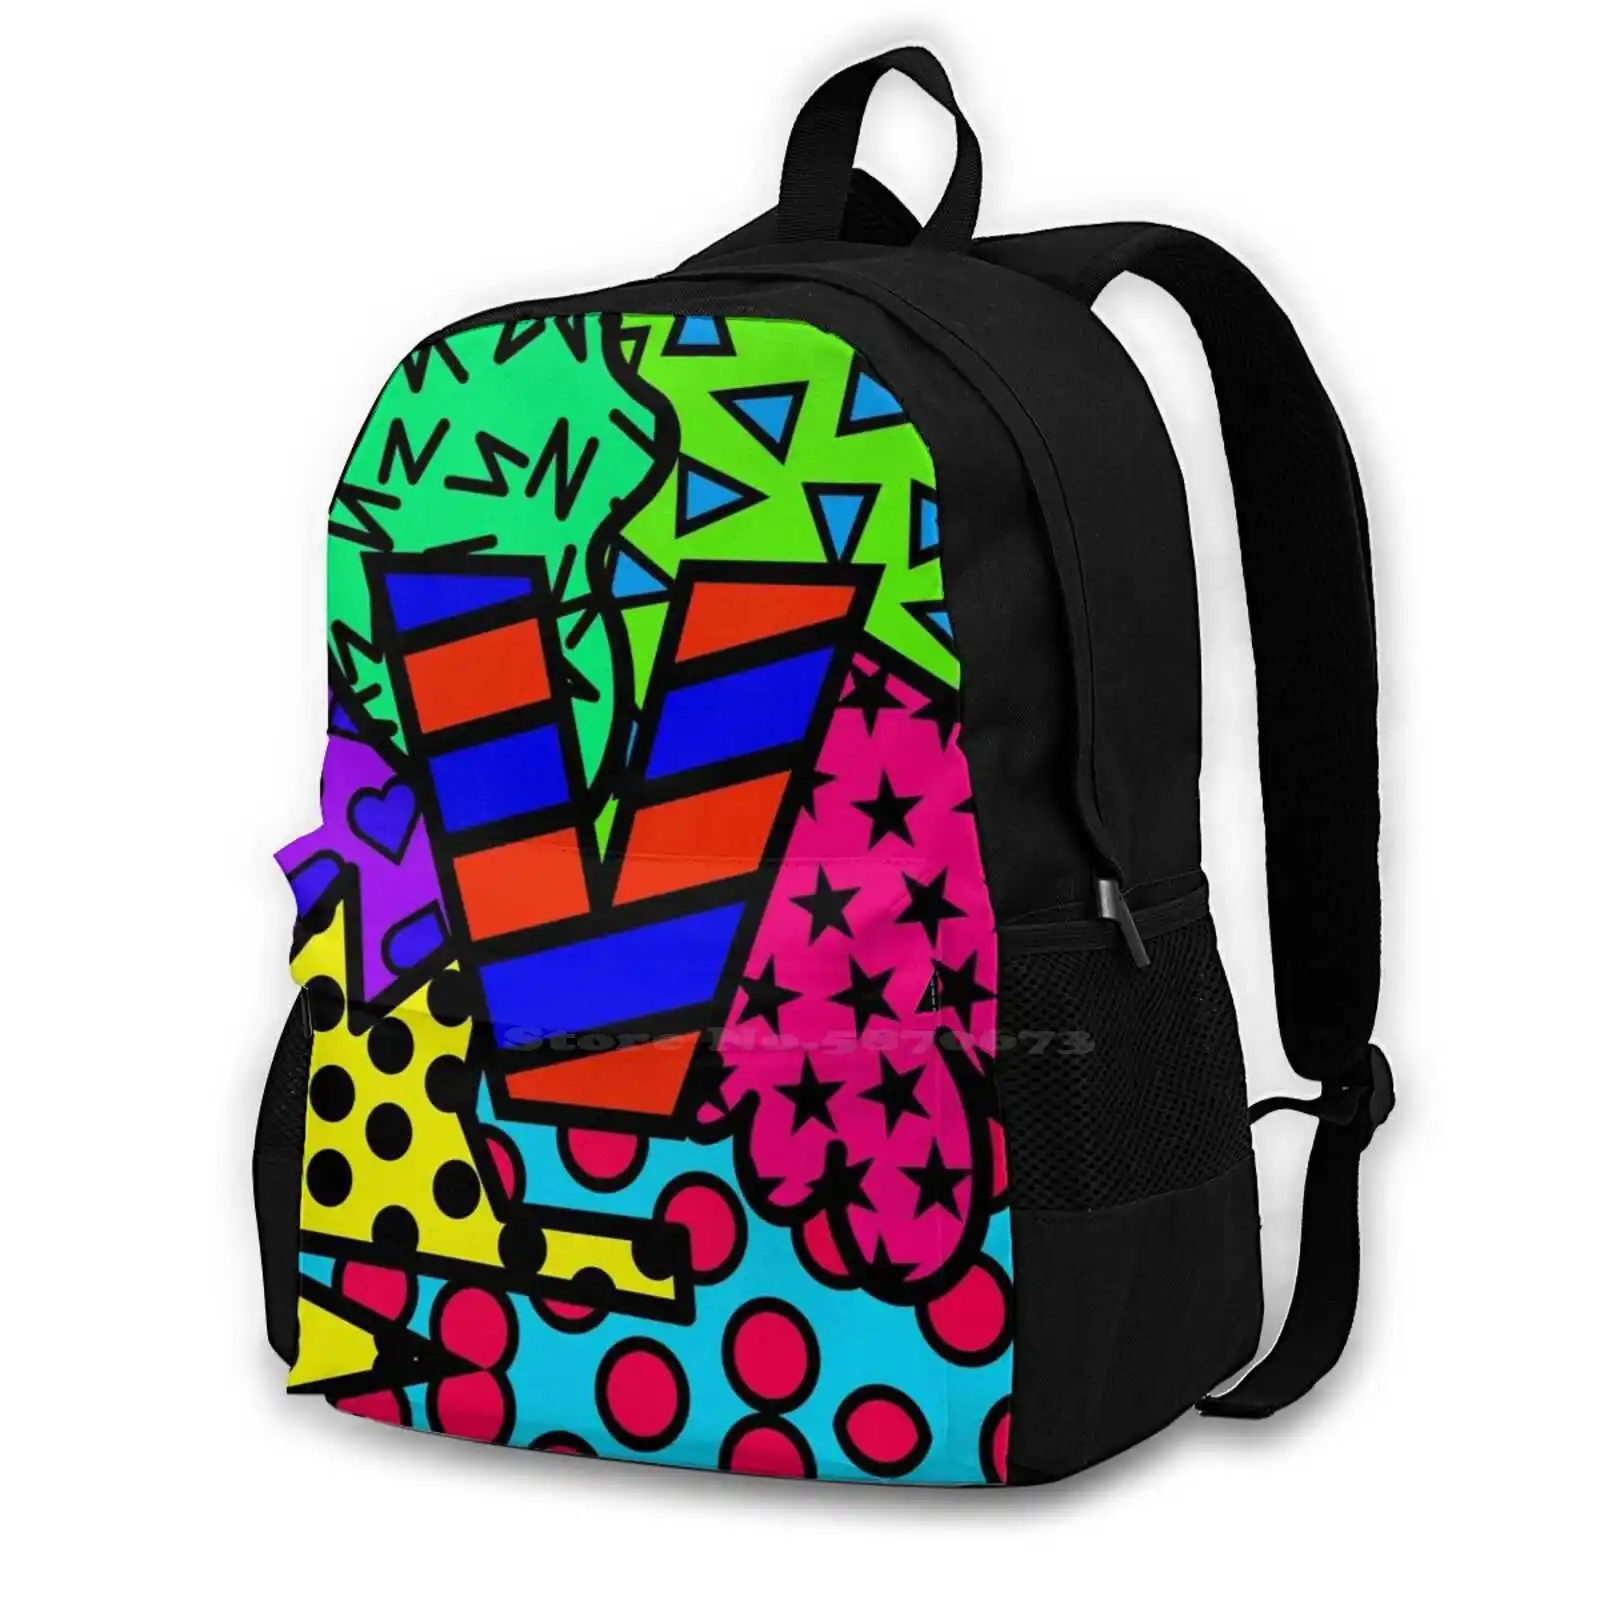 

Рюкзак для студентов-подростков из серии алфавита с буквами V, рюкзак для ноутбука, сумки для путешествий, разноцветные цветные